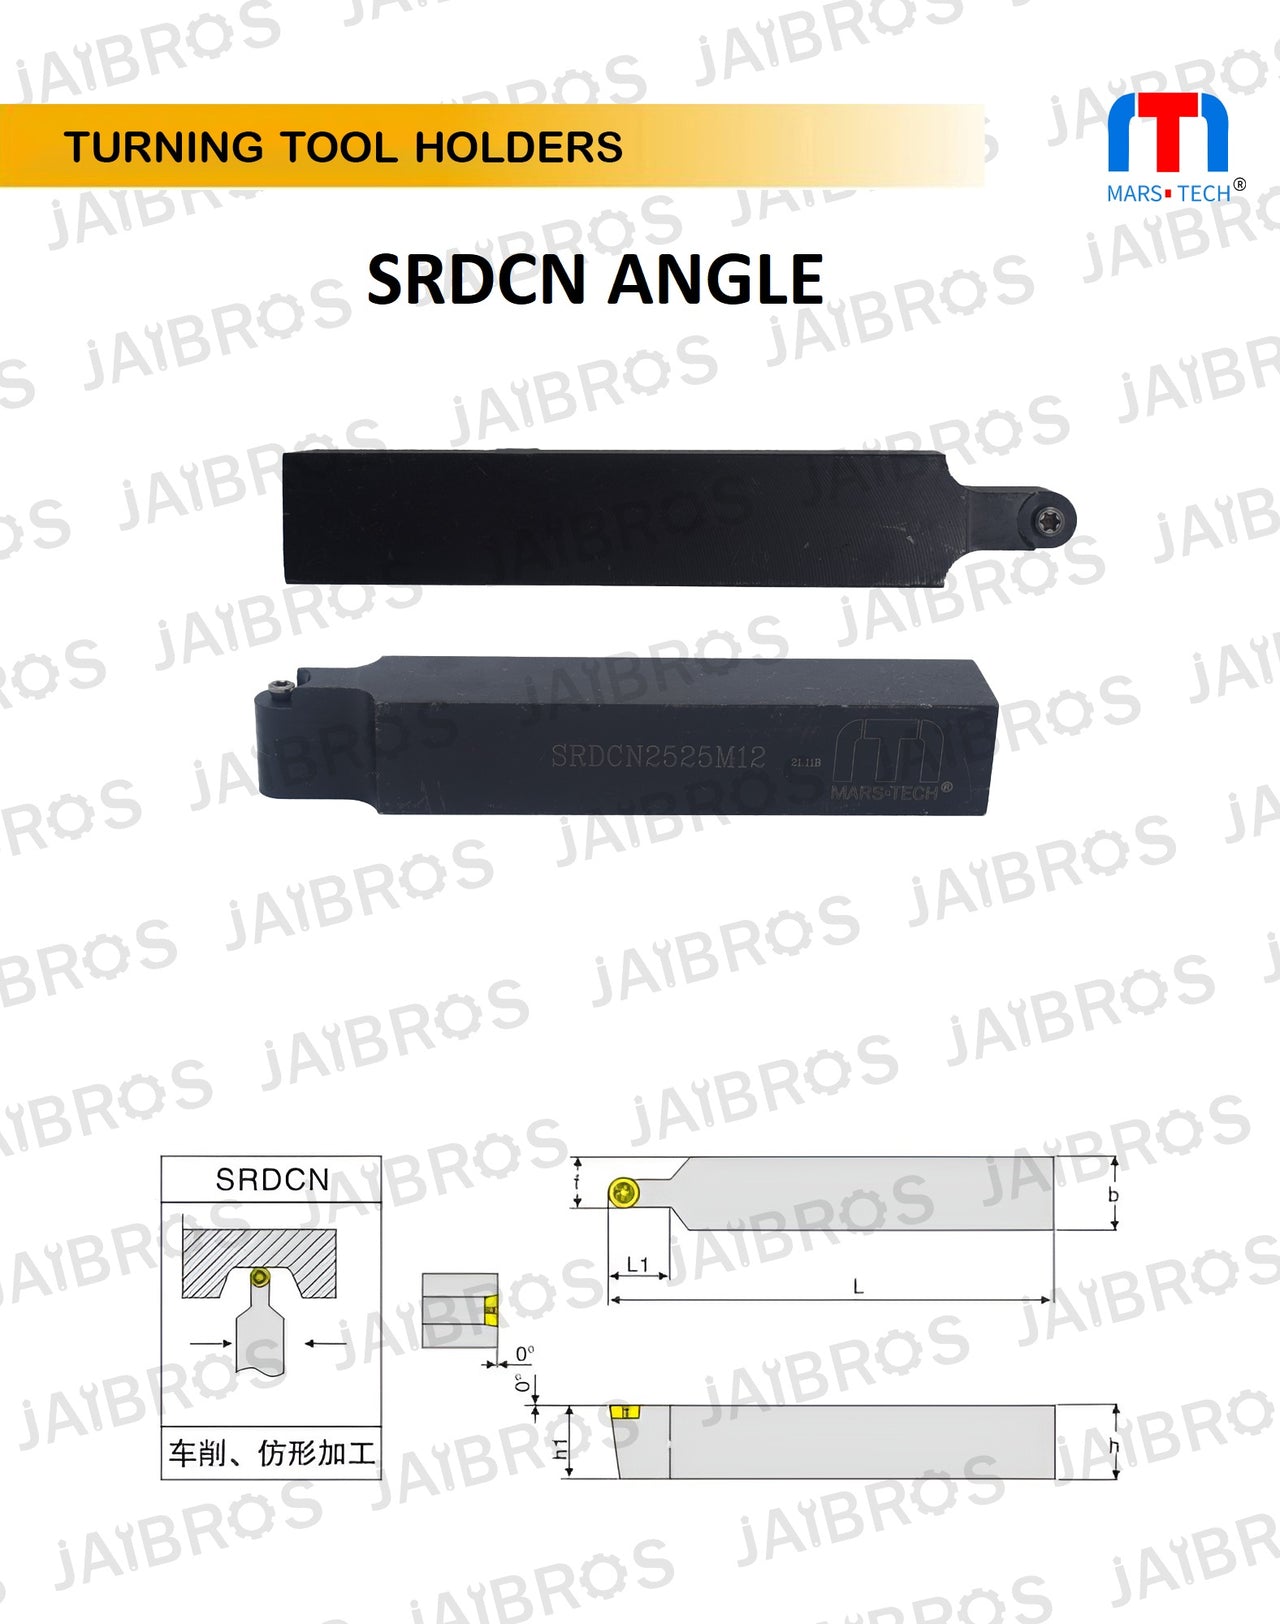 SRDCN 2525 RC1204 insert holder for turining radius pack of 1